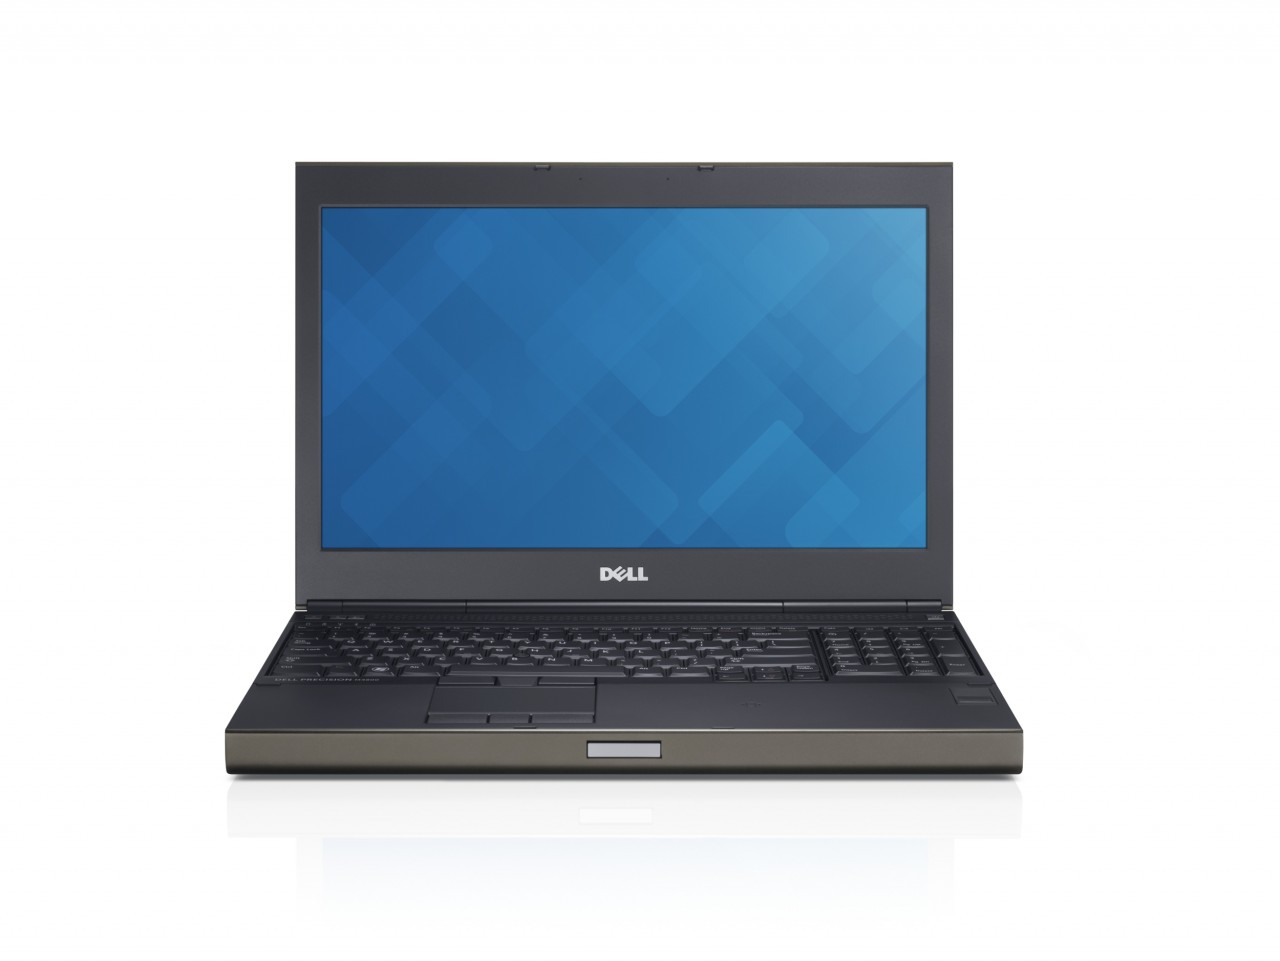 Dell Precision M6800 Workstation Notebook Intel Core I7 4800mq Cpu 17 3 Anti Glare Fhd Display 16gb